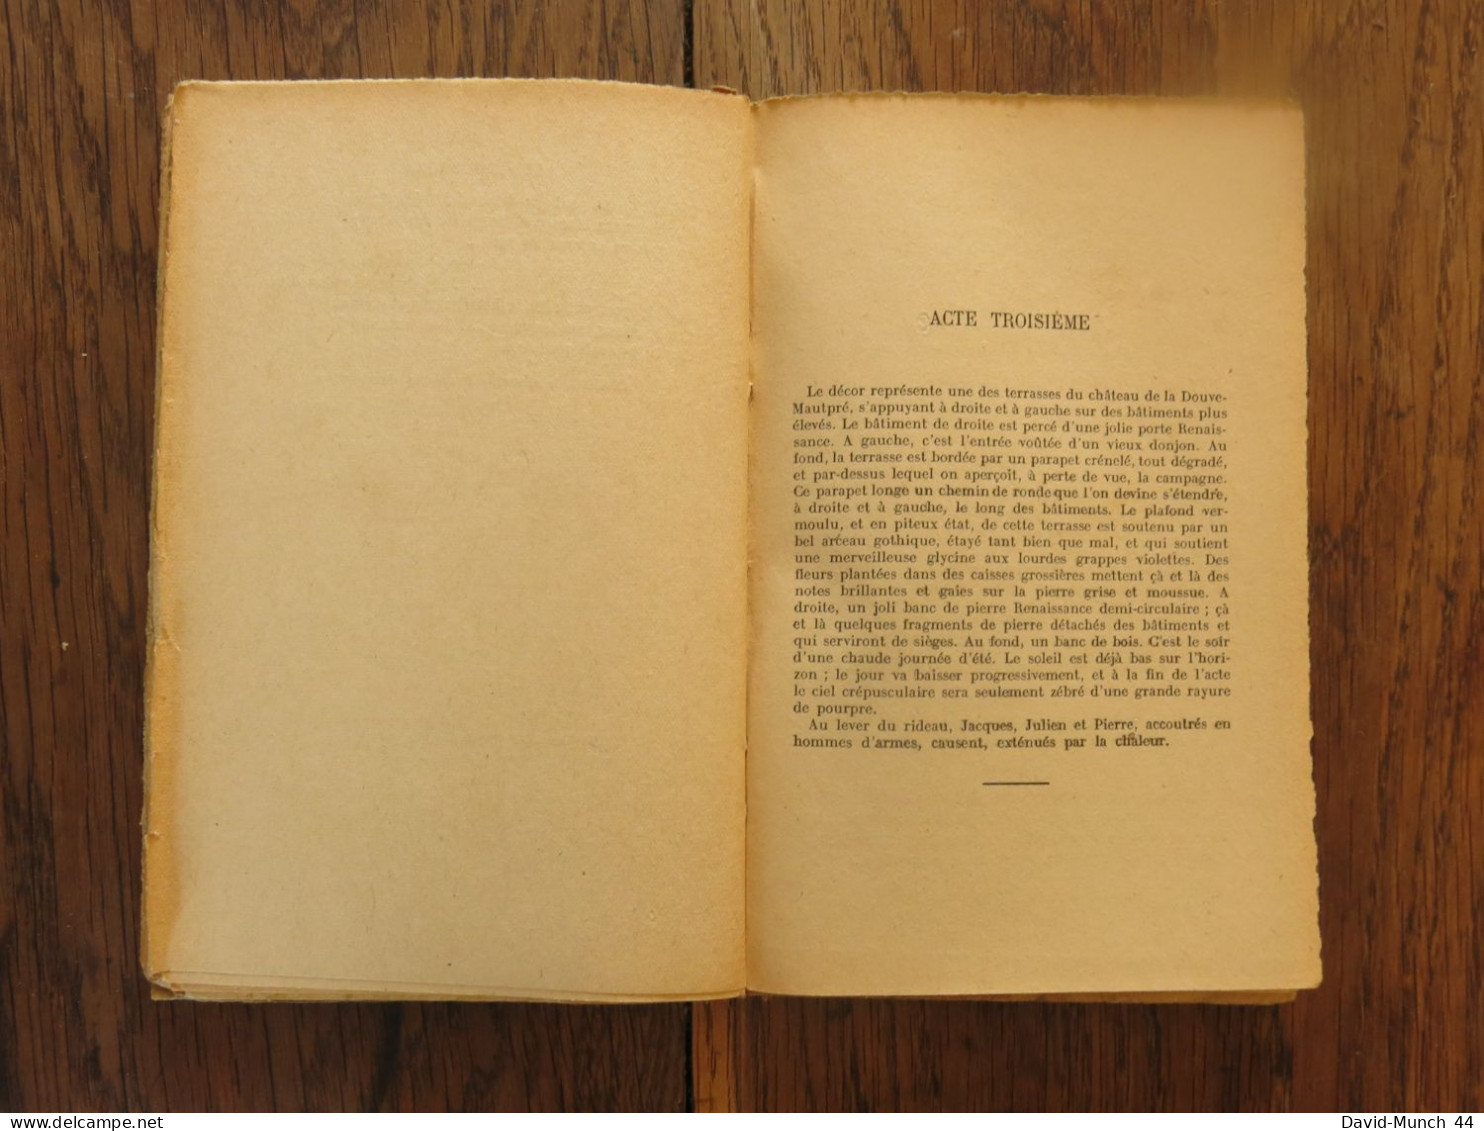 Les bouffons, Pièce en quatre actes en vers de Miguel Zamacois. Ernest Flammarion, éditeur. 1943